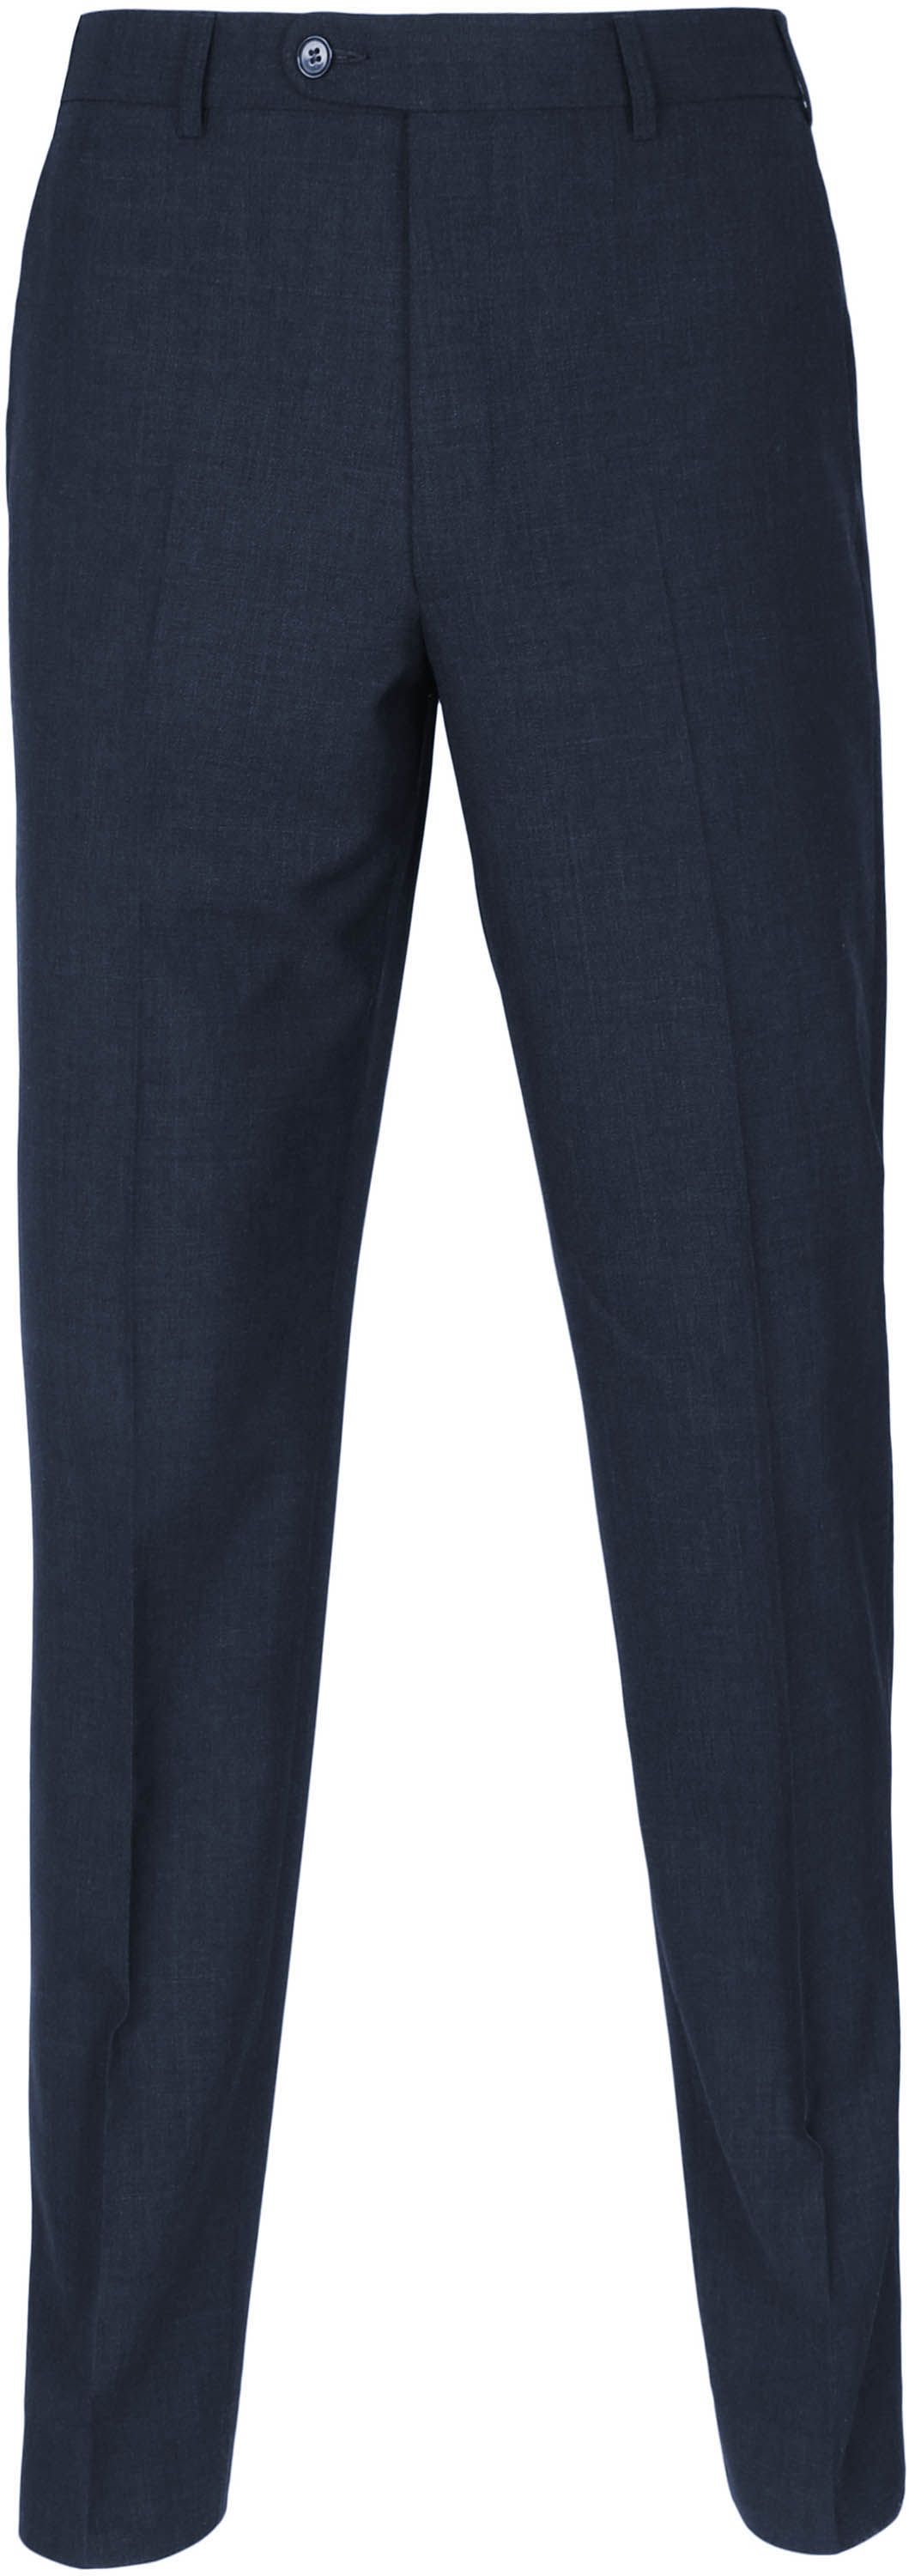 Suitable Pantalon Picador Mix Laine Foncé Bleu Bleu foncé taille 102